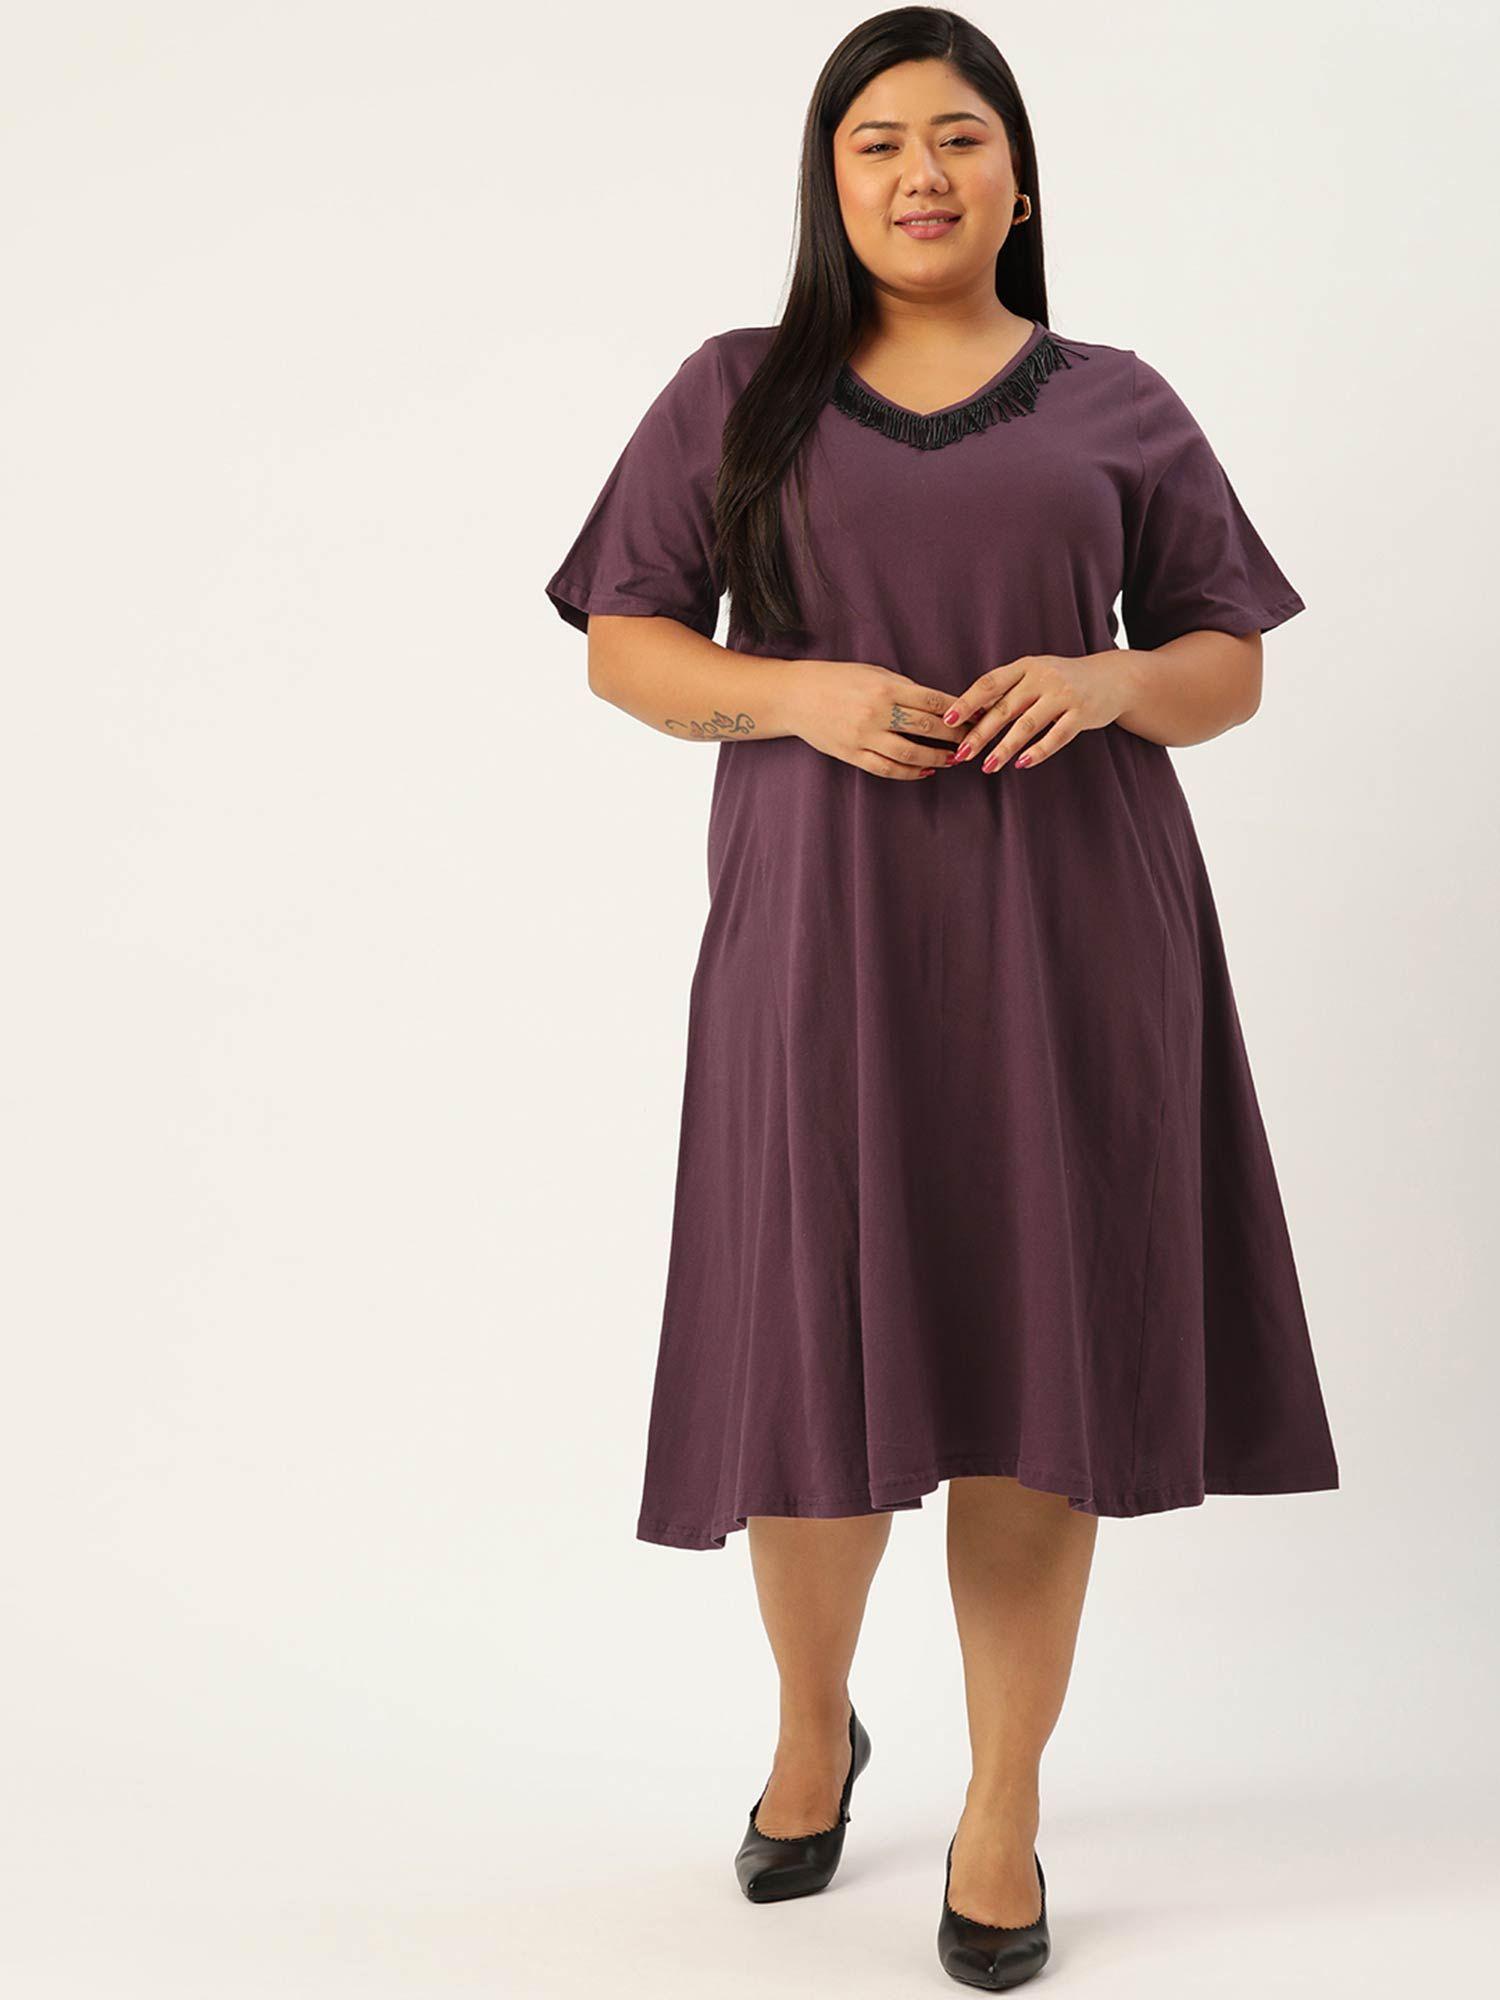 womens-purple-solid-color-glass-tassels-a-line-midi-dress